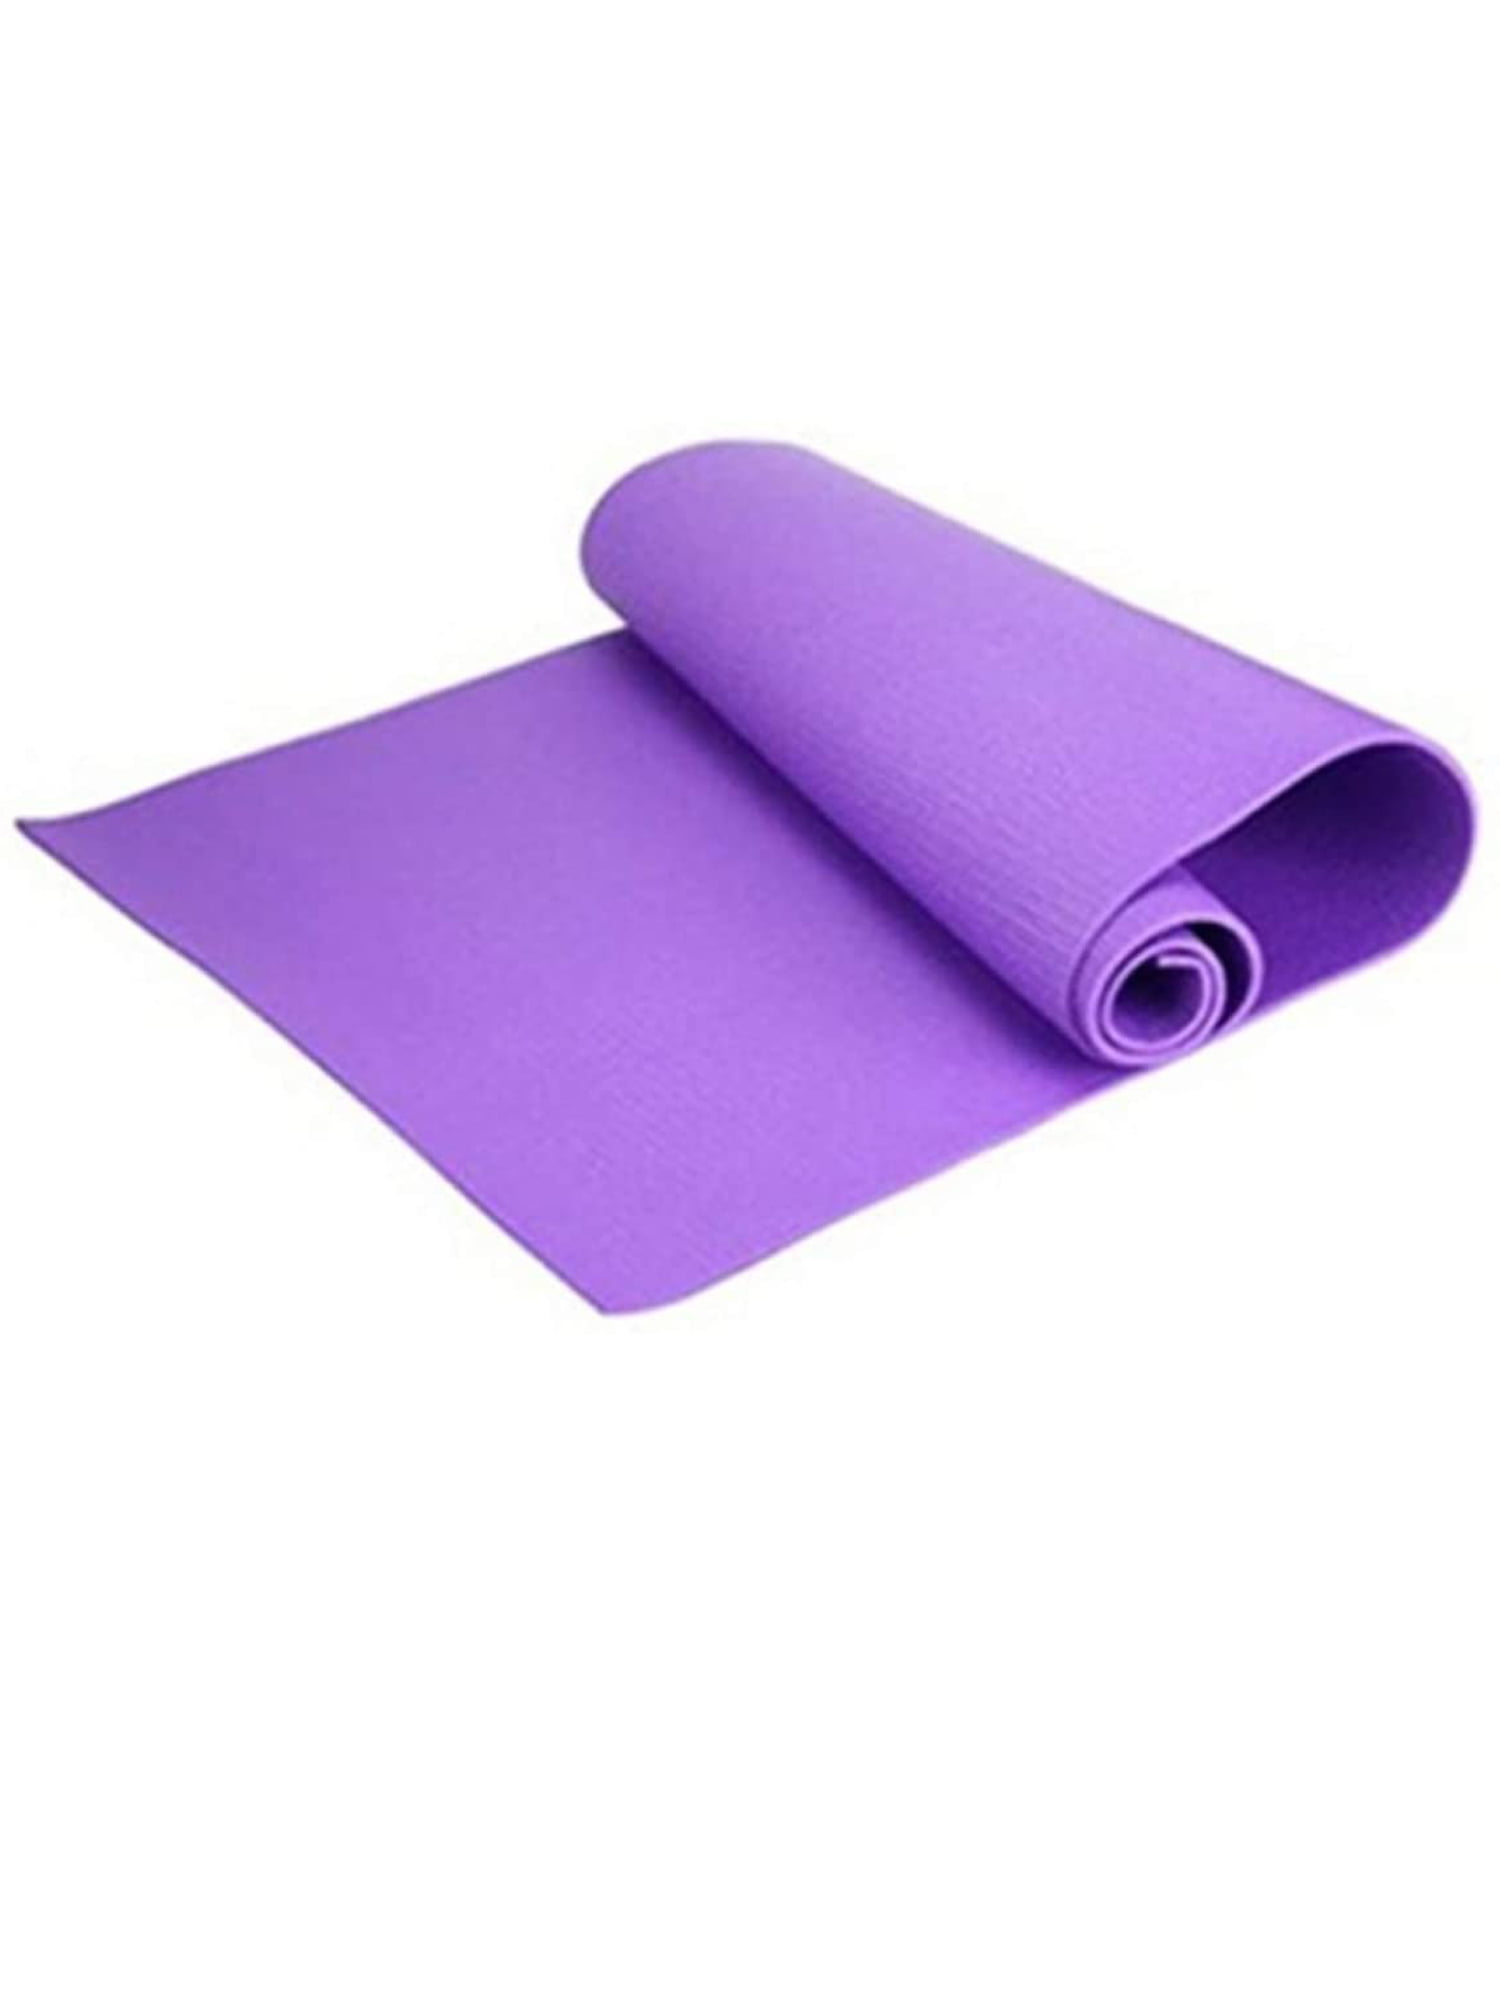 Yoga mat thick large Workout Fitness Pilates physio Gym Exercise Gymnastics UK 